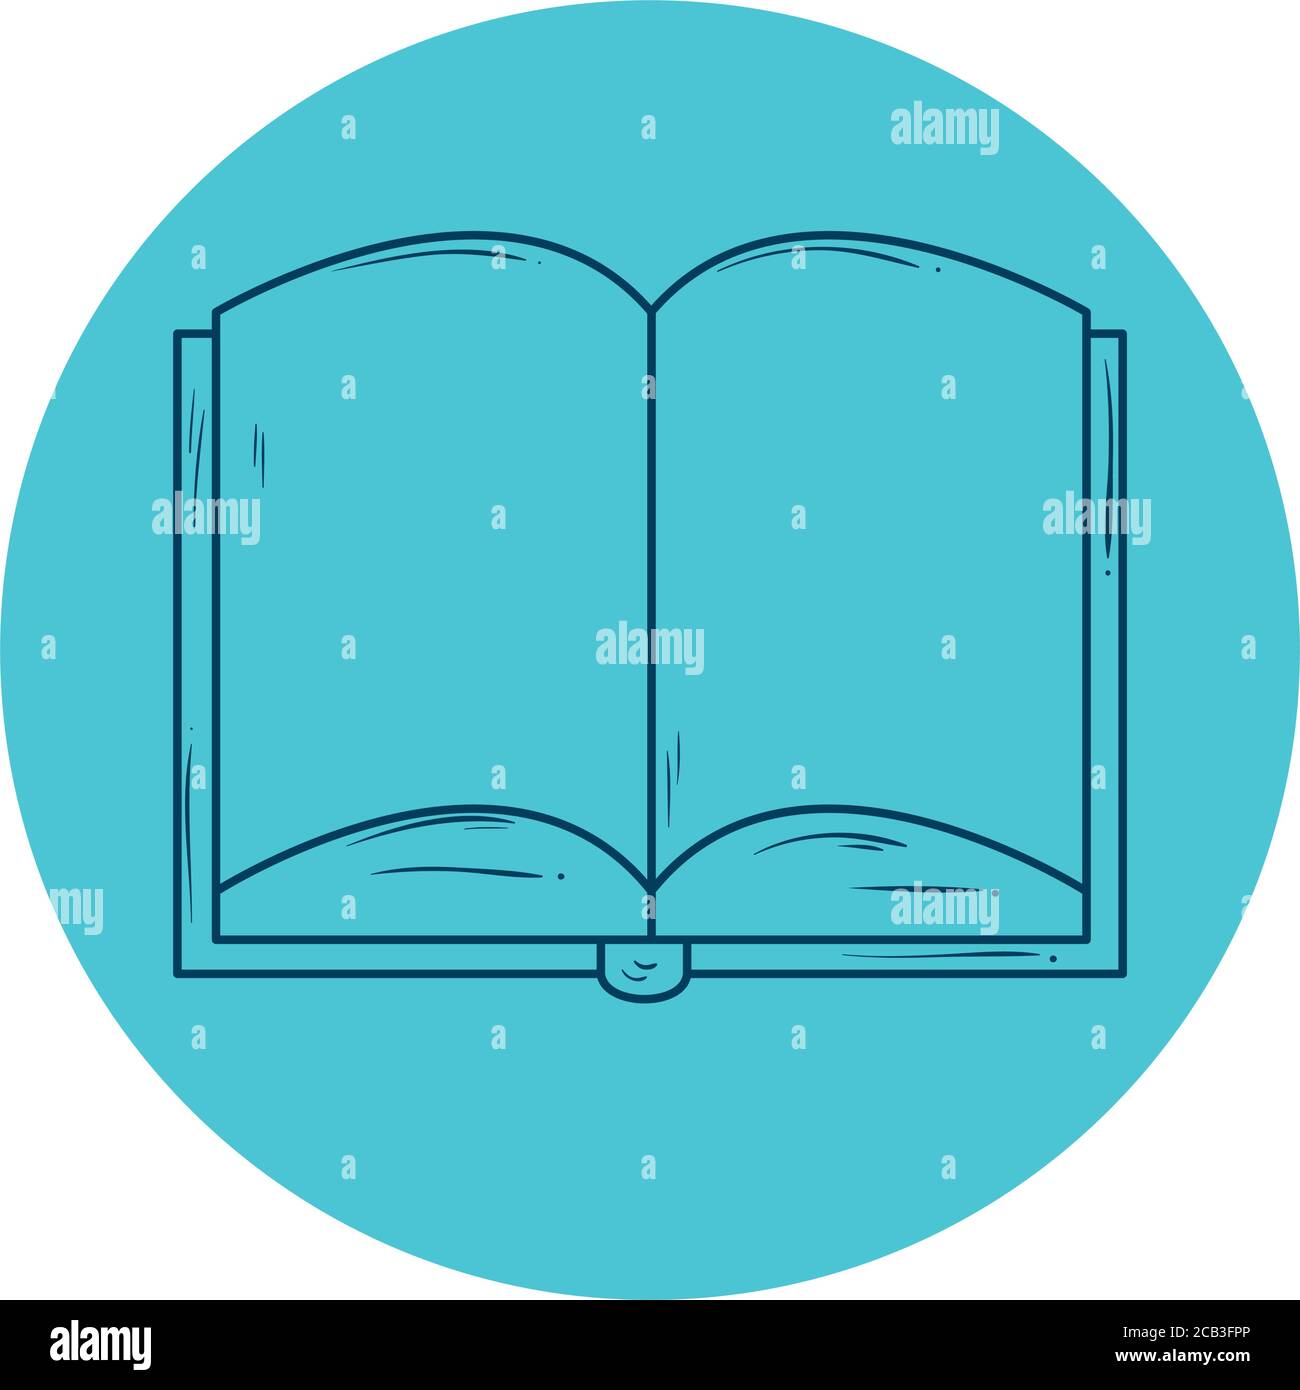 apri la documentazione del libro, stile della linea nella cornice circolare Illustrazione Vettoriale